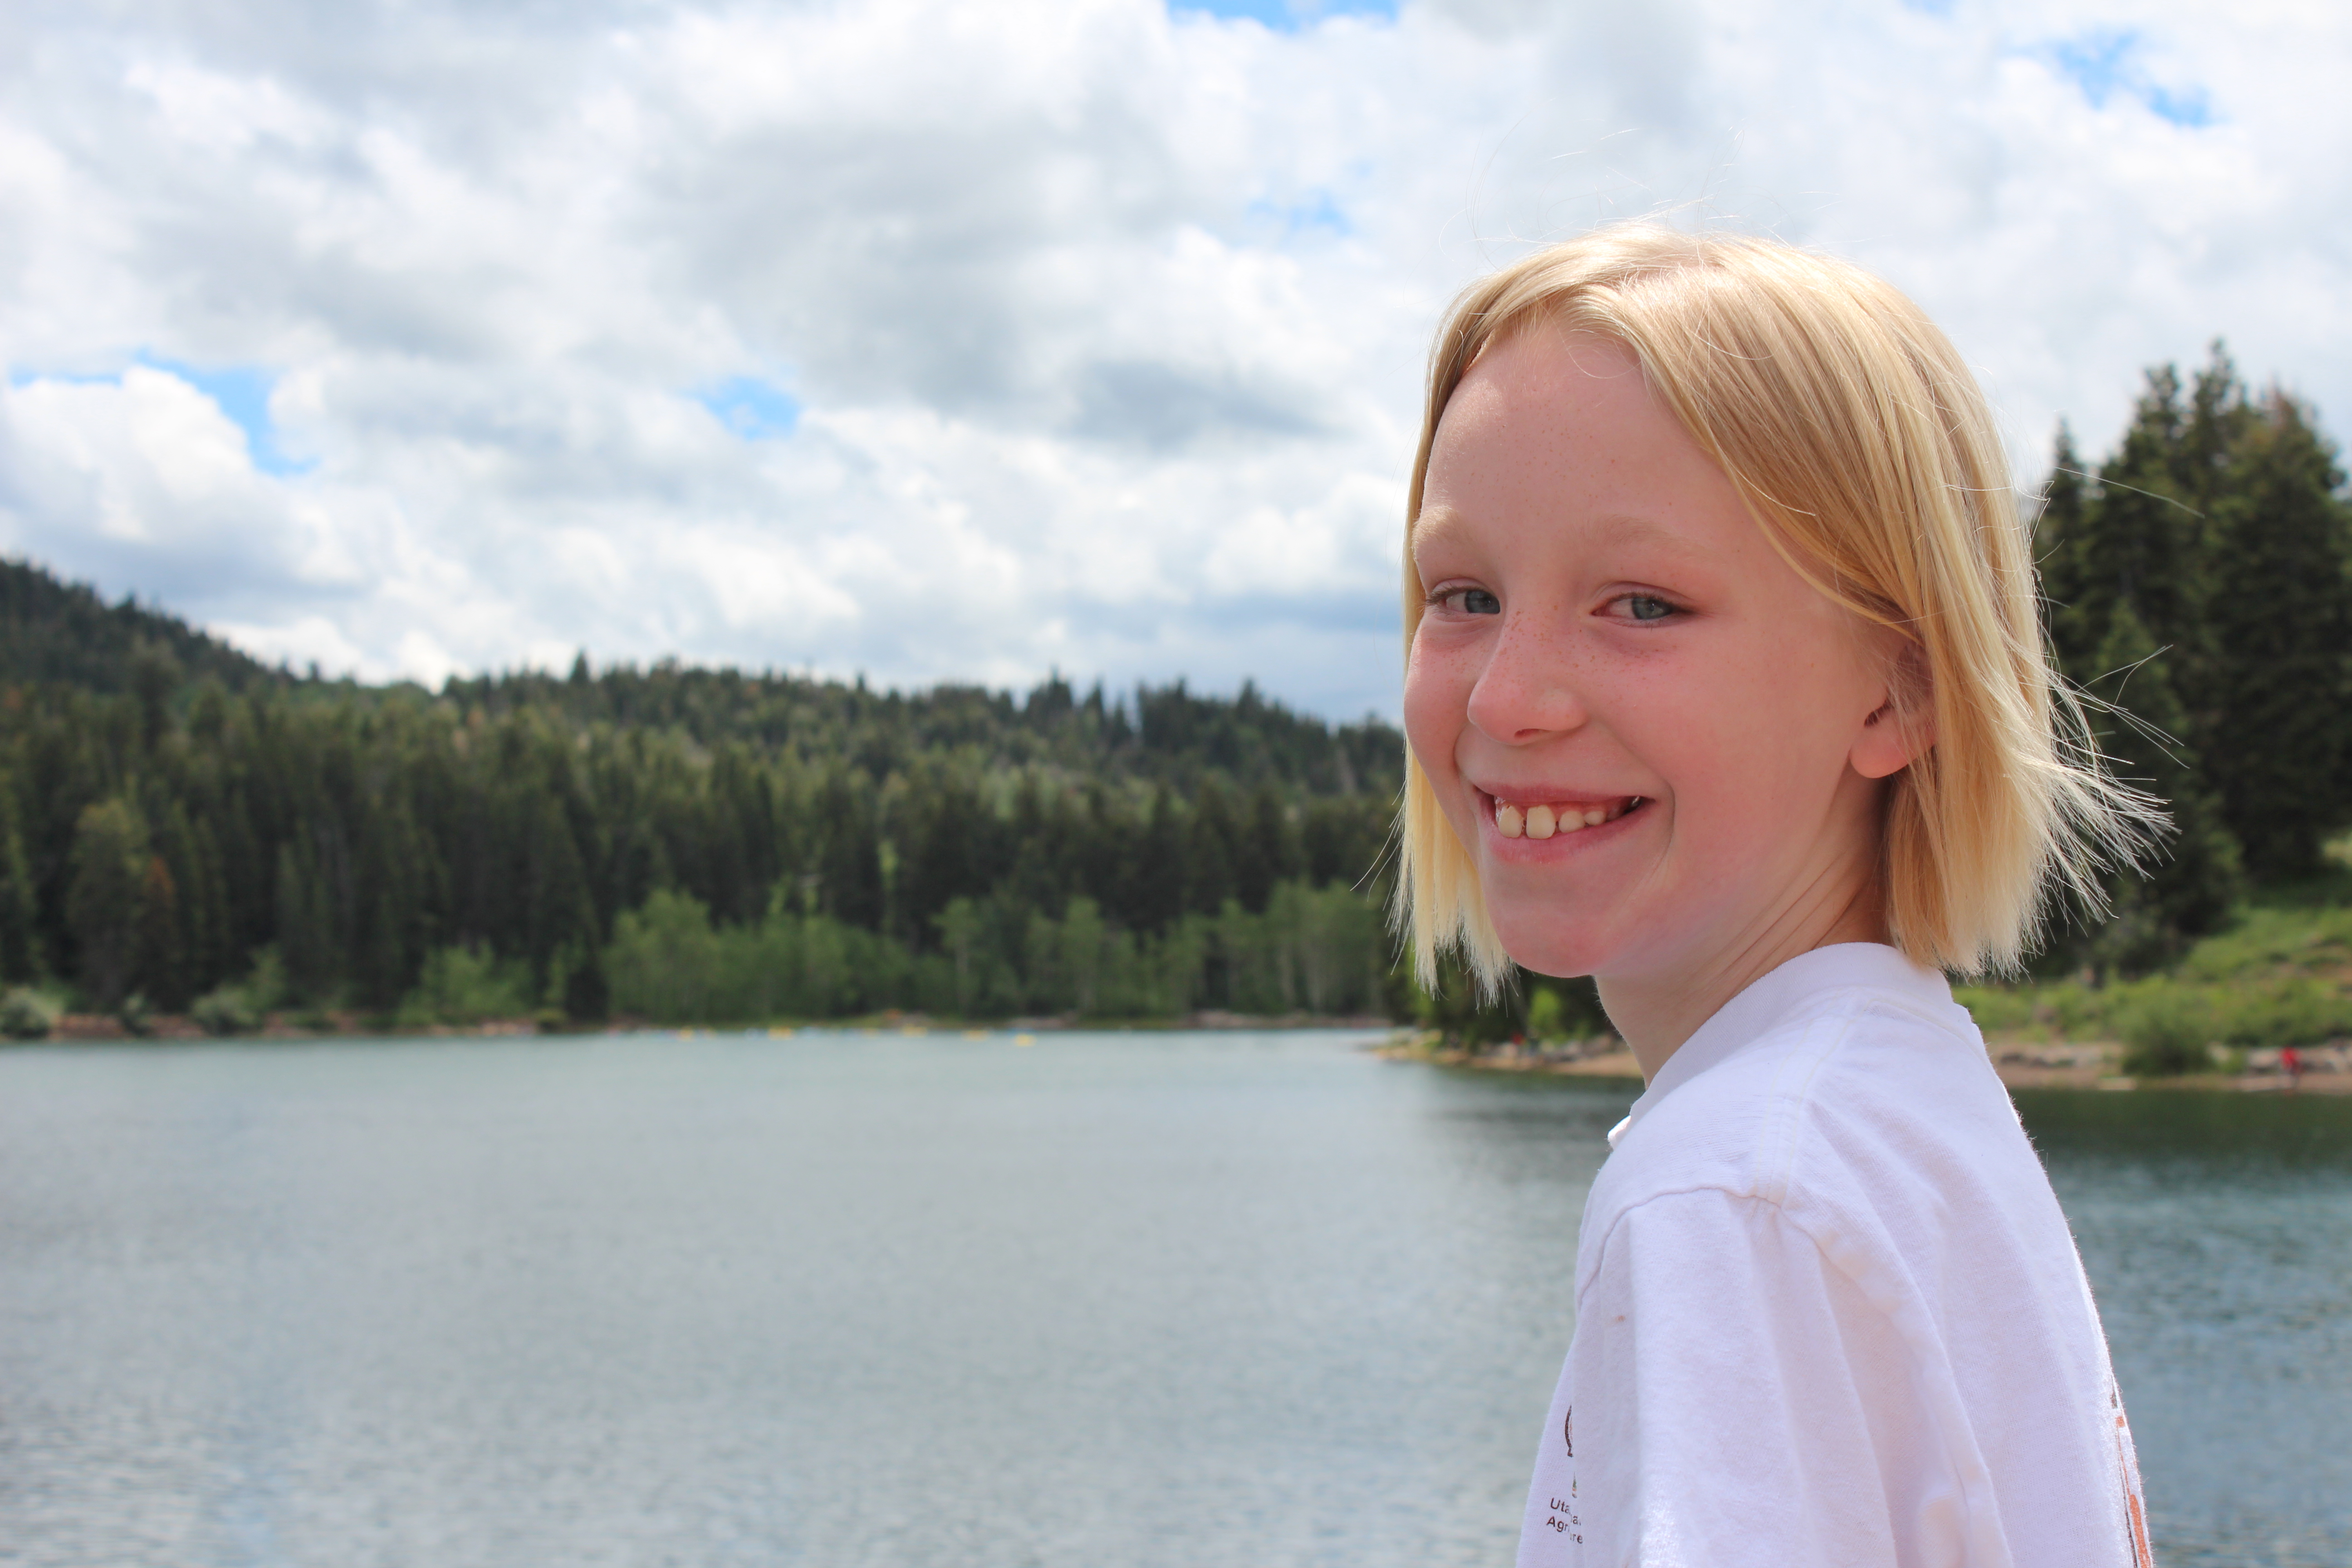 Emma at Payson Lakes